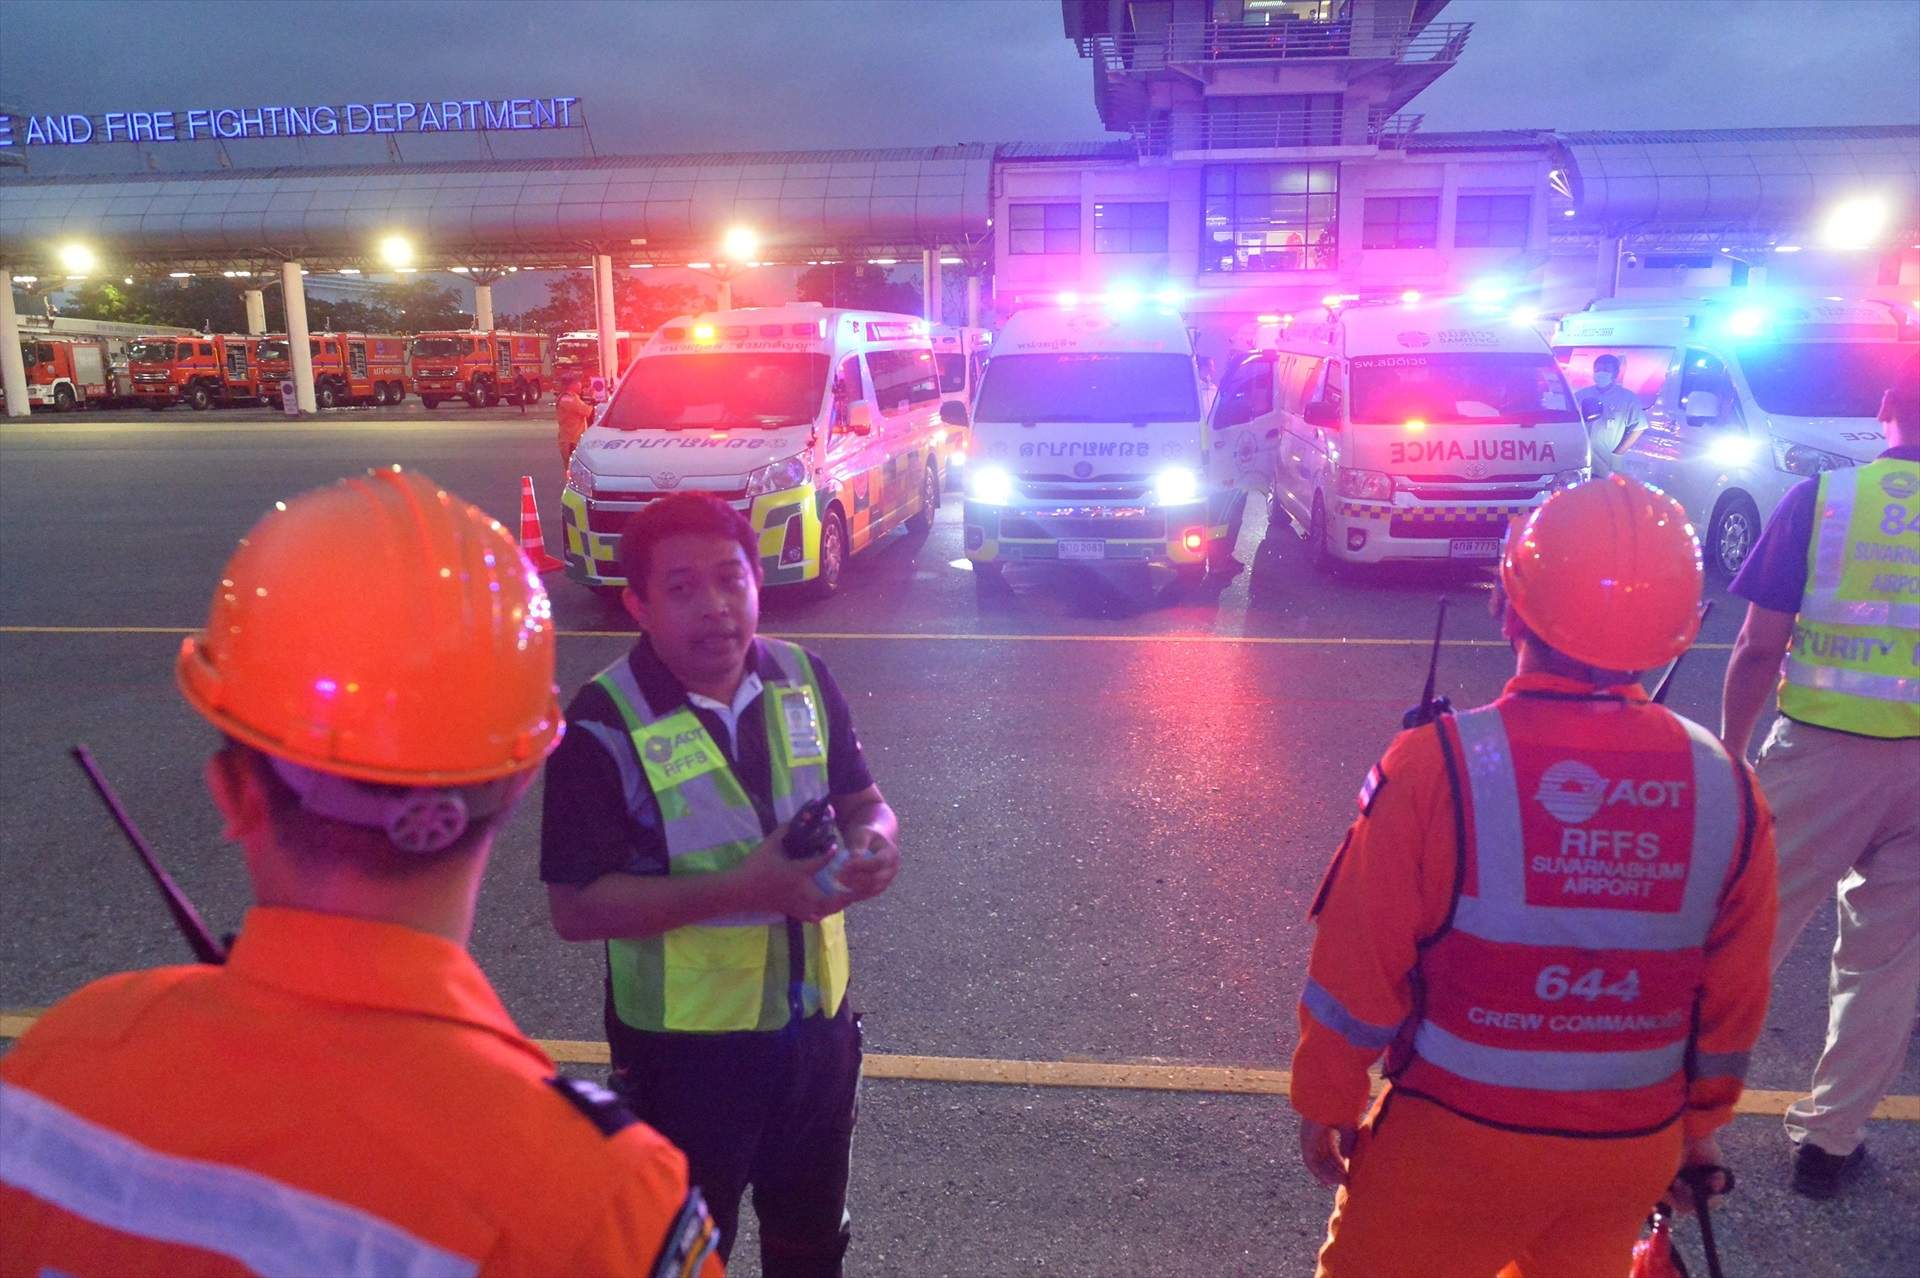 Dispositivo en el aeropuerto de Suvarnabhumi de Bangkok tras el aterrizaje de emergencia del avión de Singapore Airlines / Rachen Sageamsak, Xinhua News, ContactoPhoto, Europa Press